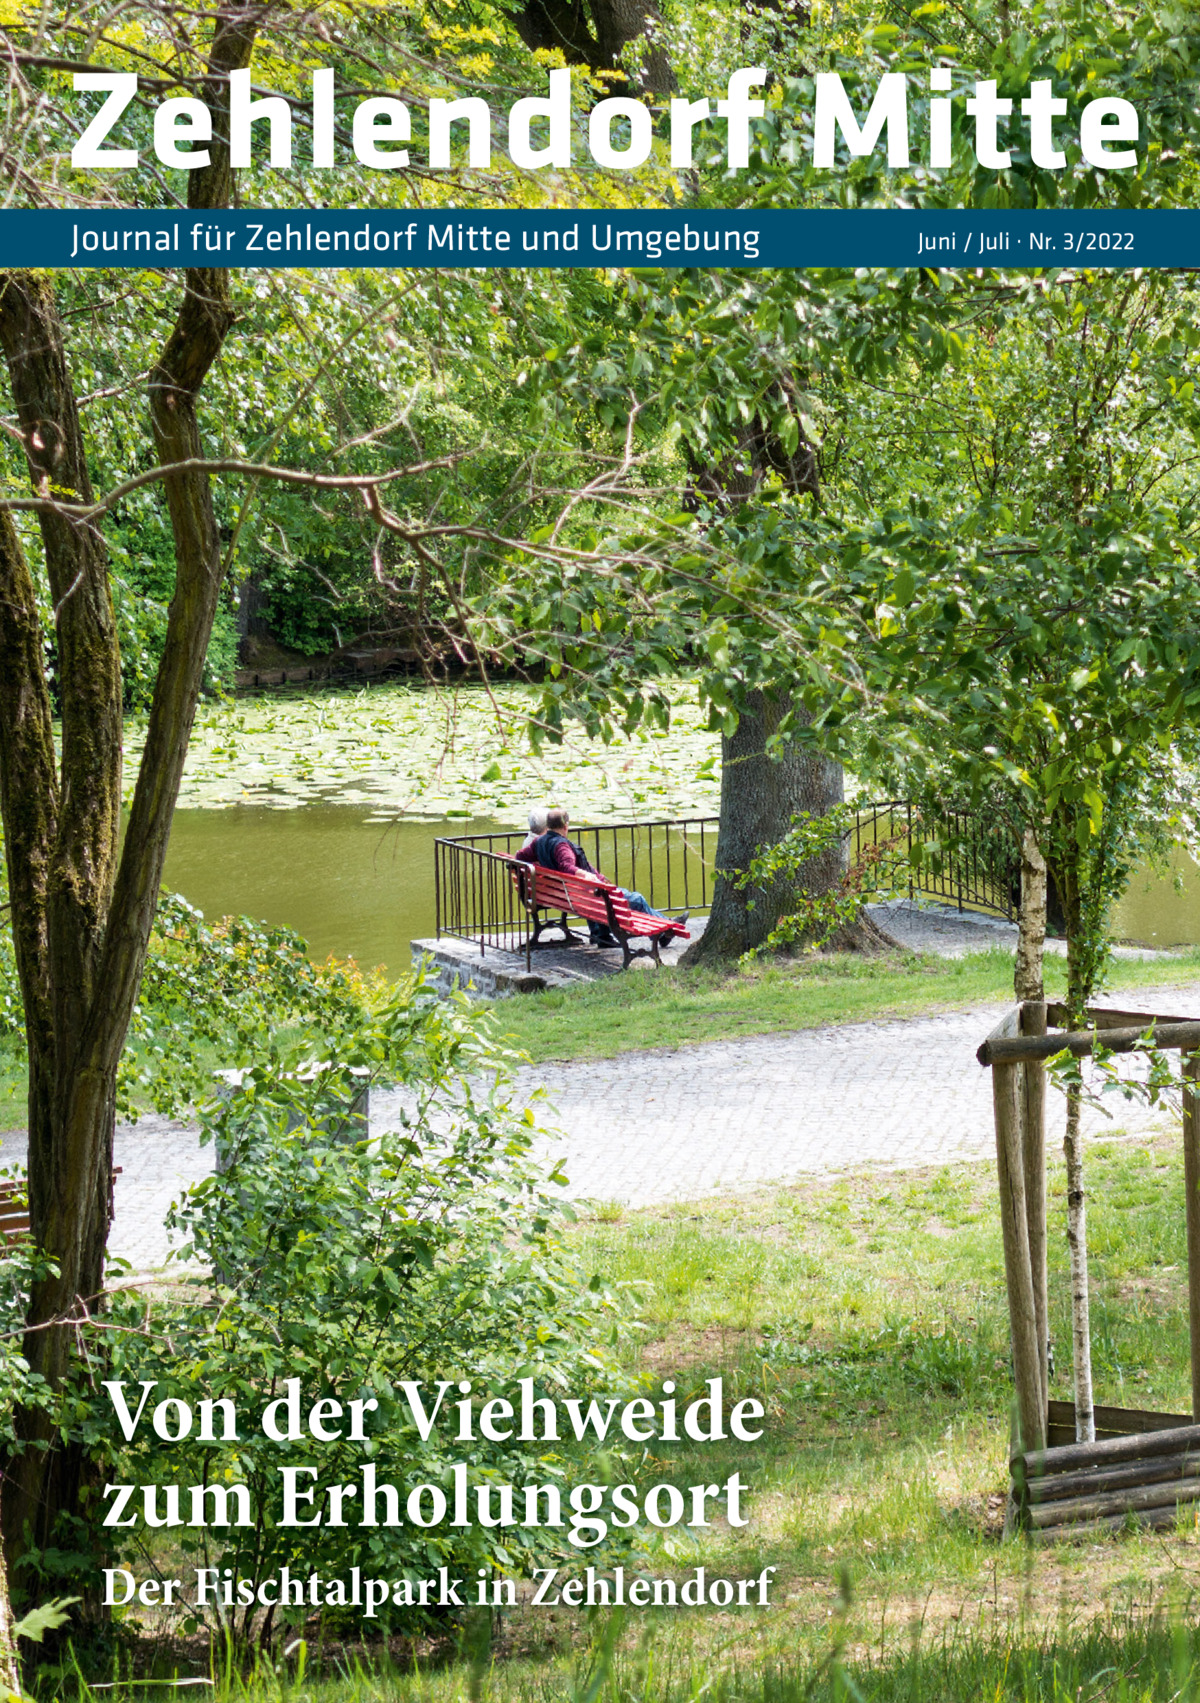 Zehlendorf Mitte Journal für Zehlendorf Mitte und Umgebung  Von der Viehweide zum Erholungsort  Der Fischtalpark in Zehlendorf  Juni / Juli · Nr. 3/2022